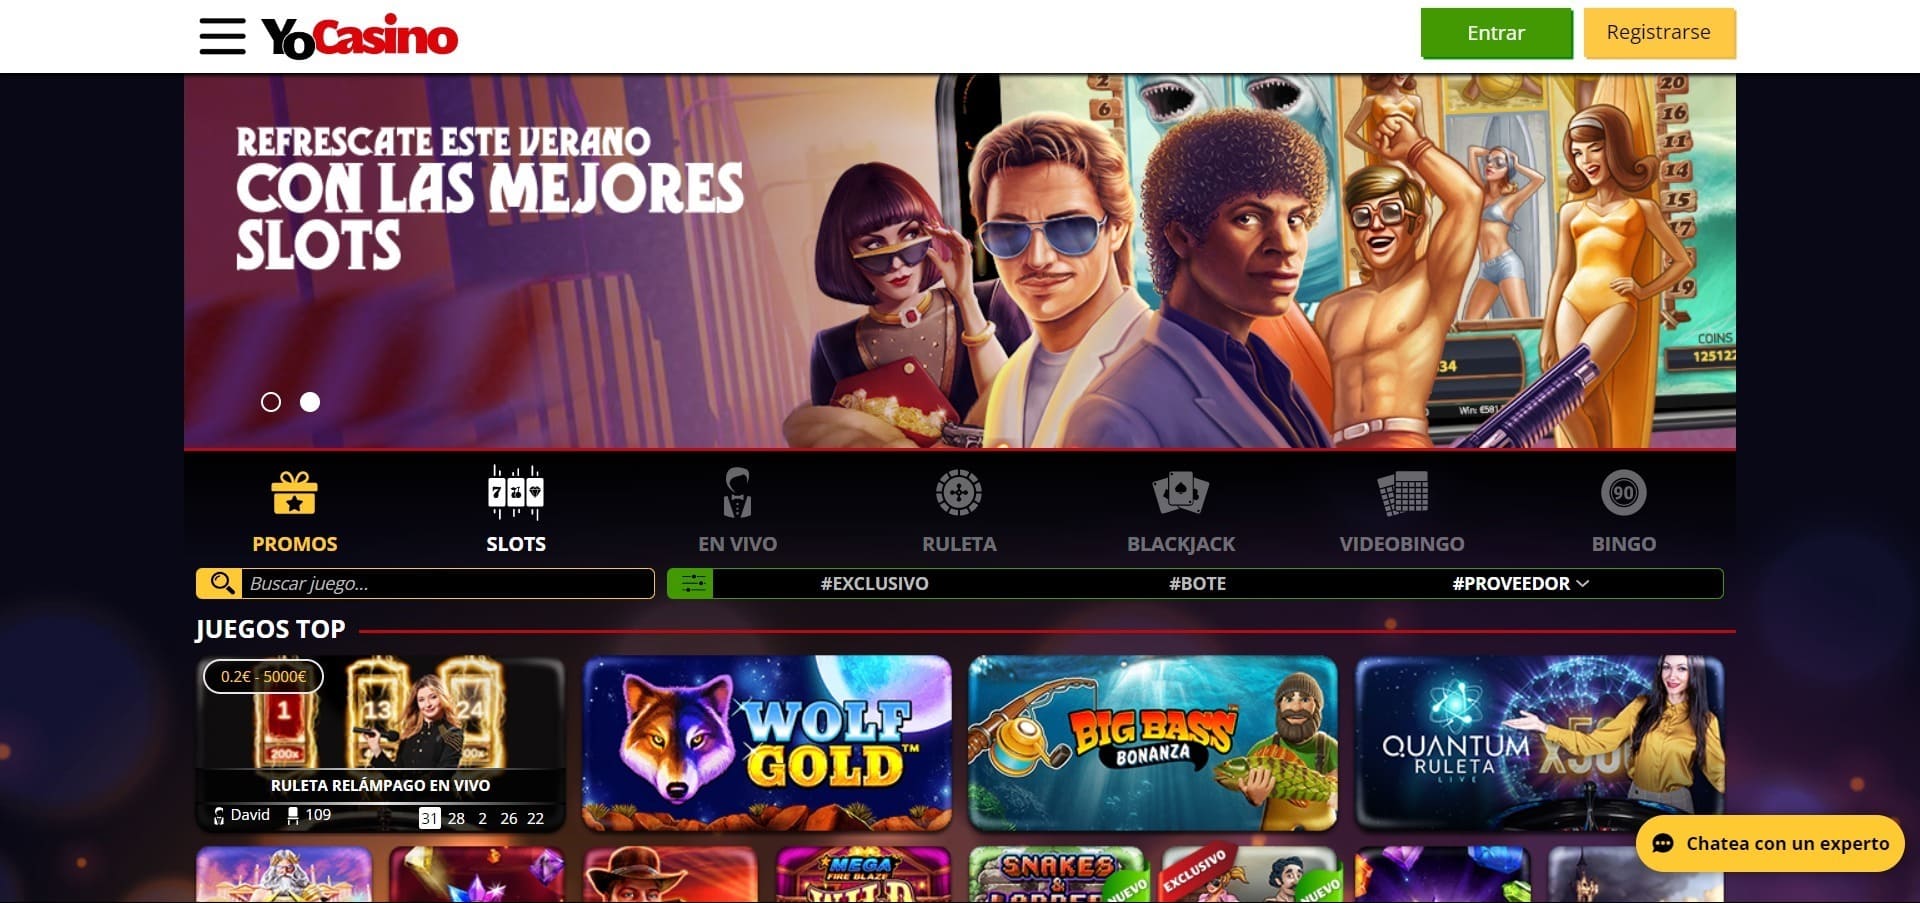 Sitio web oficial de la Yo Casino